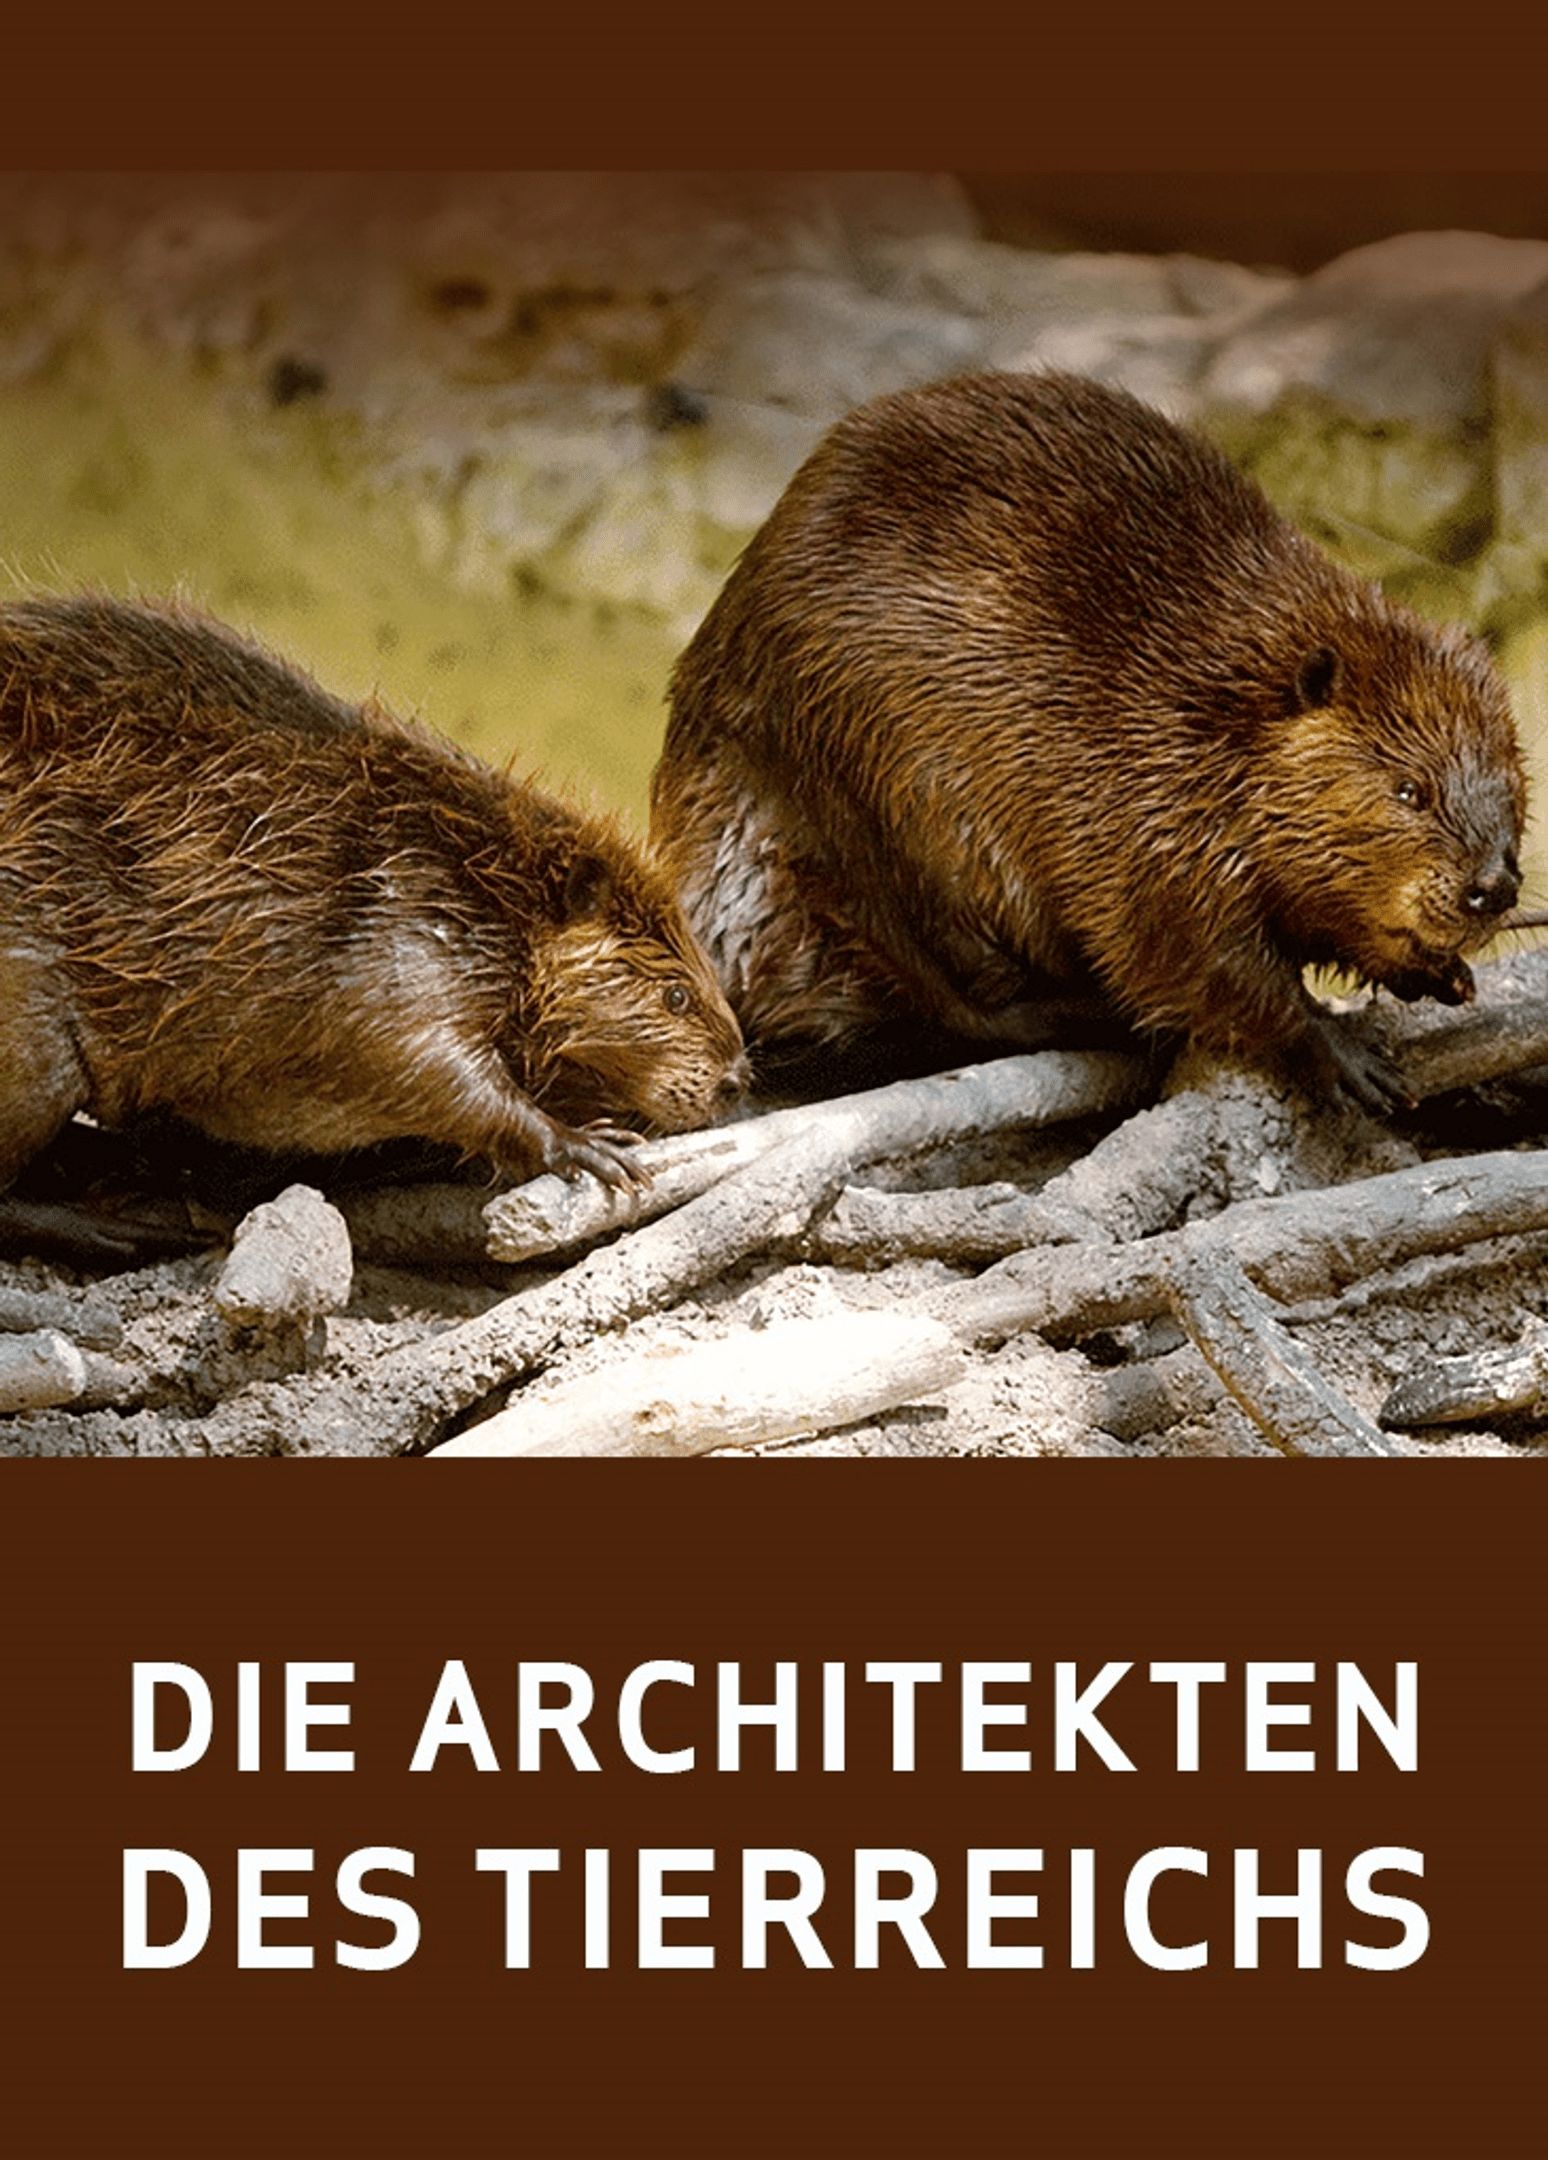 DE - Die Architekten des Tierreichs (2019)